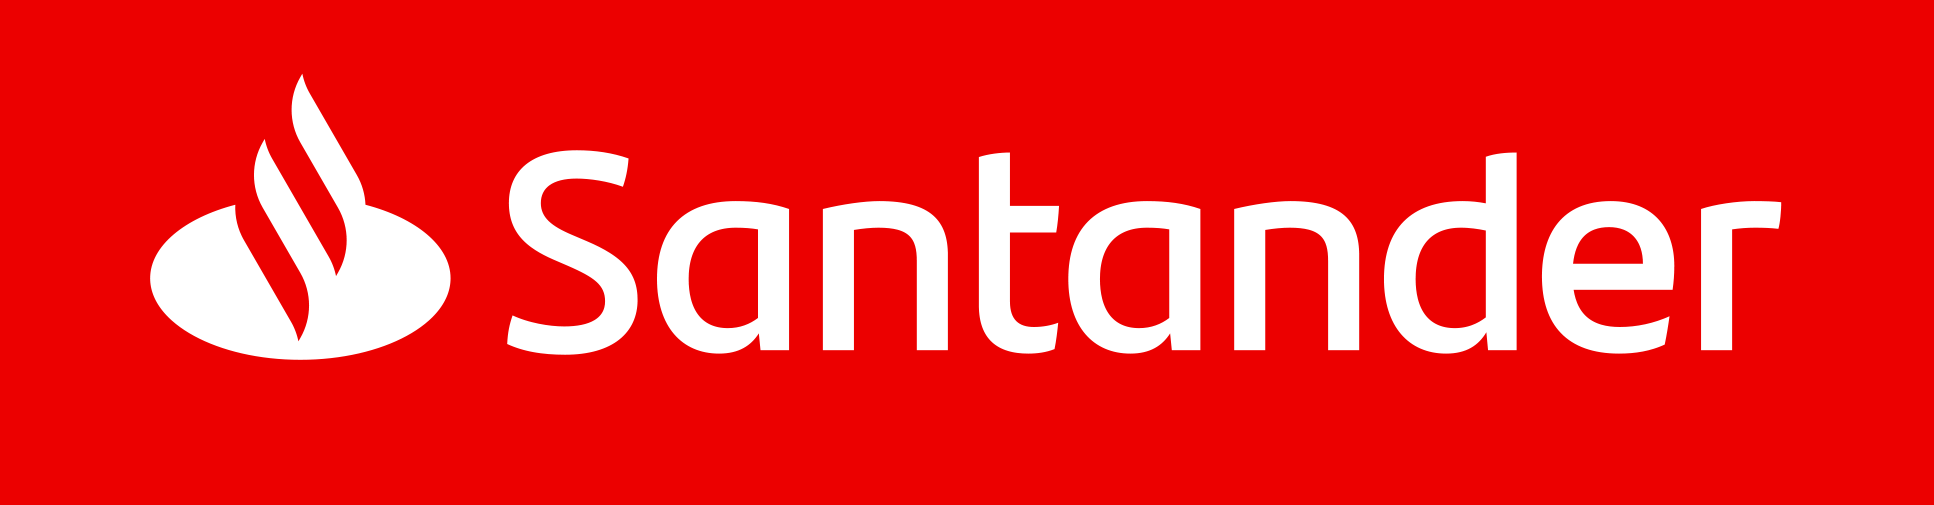 Santander Bank Polska z nagrodą główną w konkursie "The Best Annual Report 2019" 